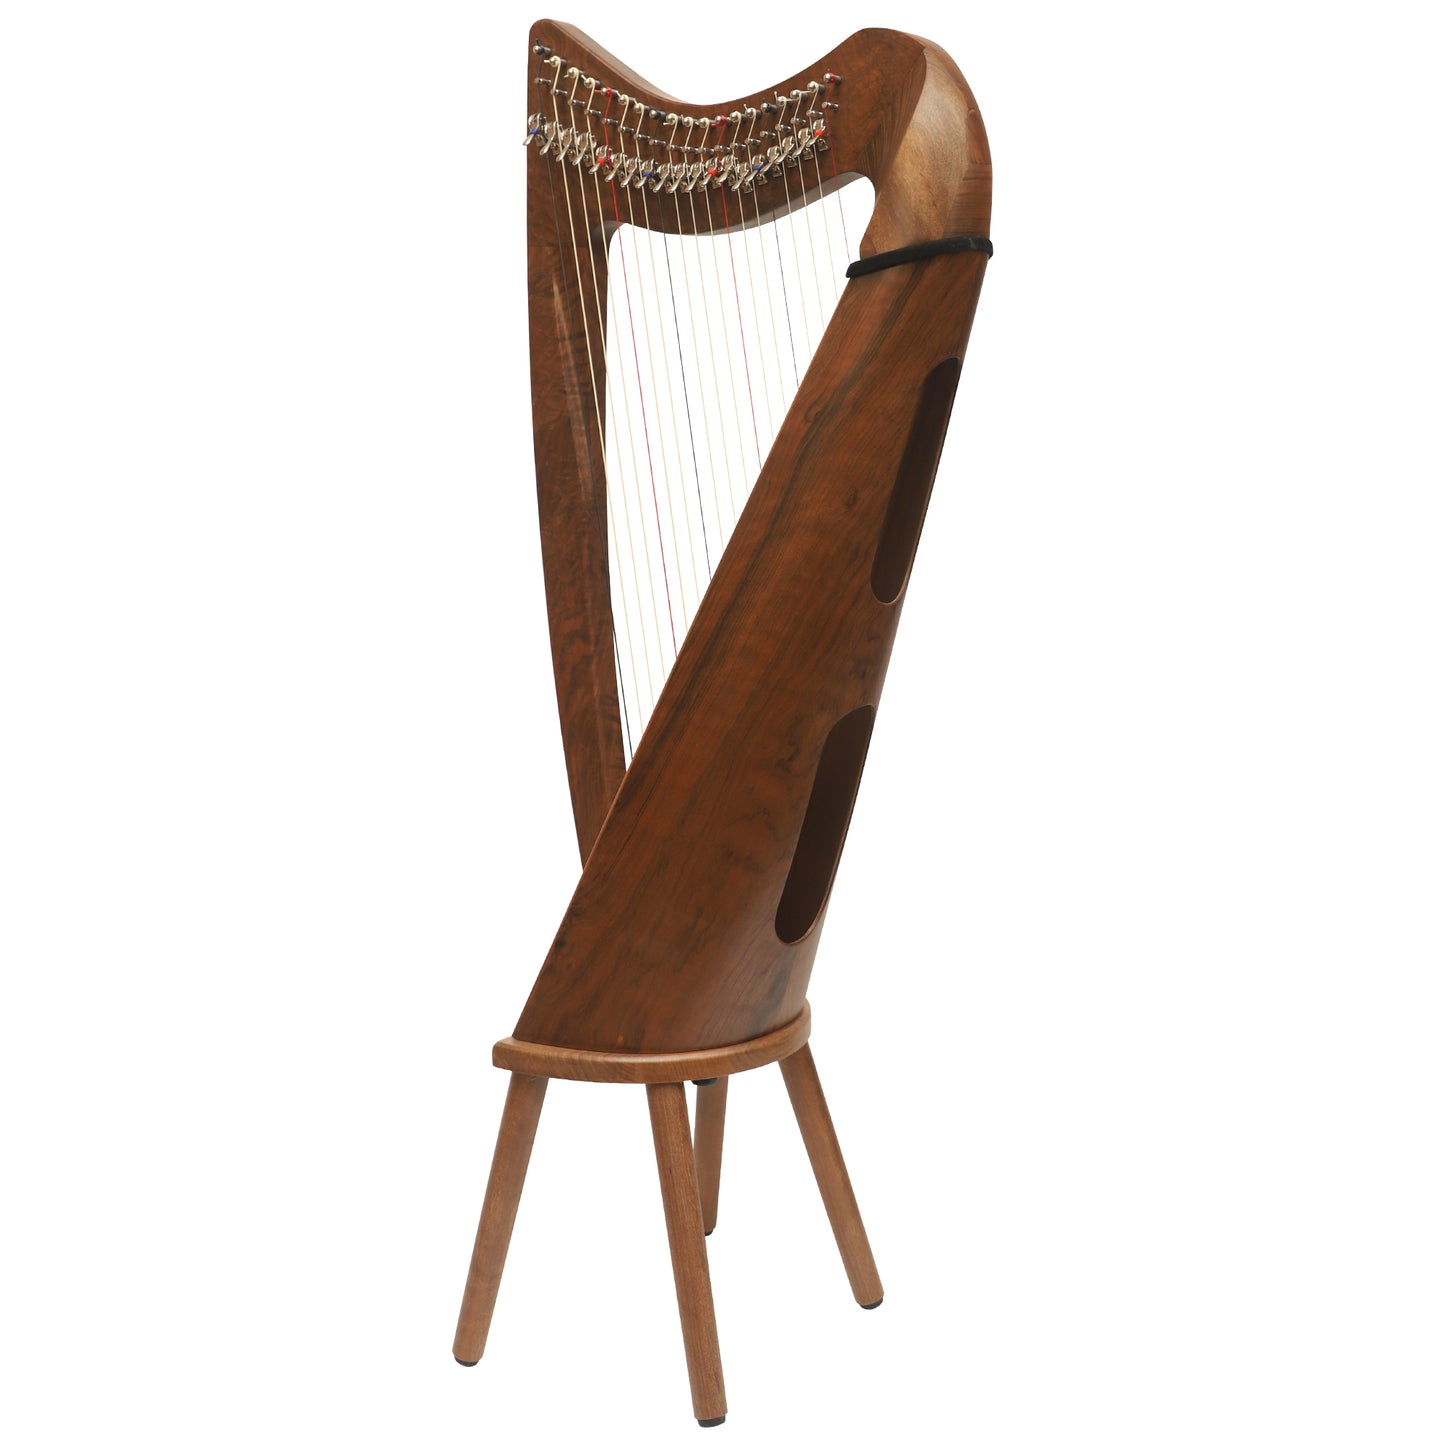 19 String Claddagh Harp Walnut